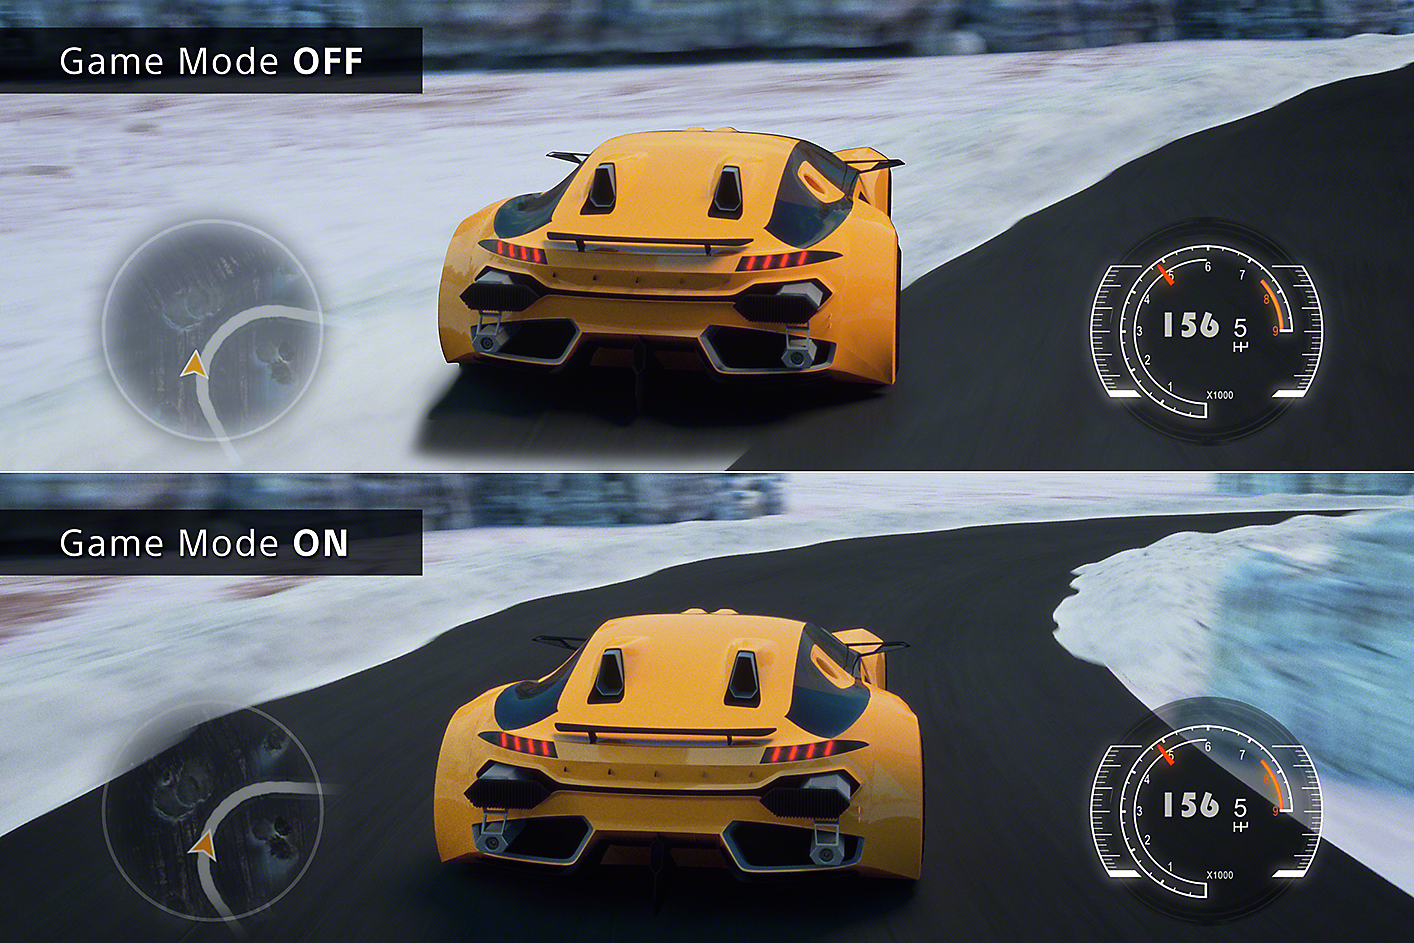 Immagine divisa con due scene di gioco: una con un'auto che esce dalla pista in modalità Gioco OFF e l'altra con un'auto in pista in modalità Gioco ON